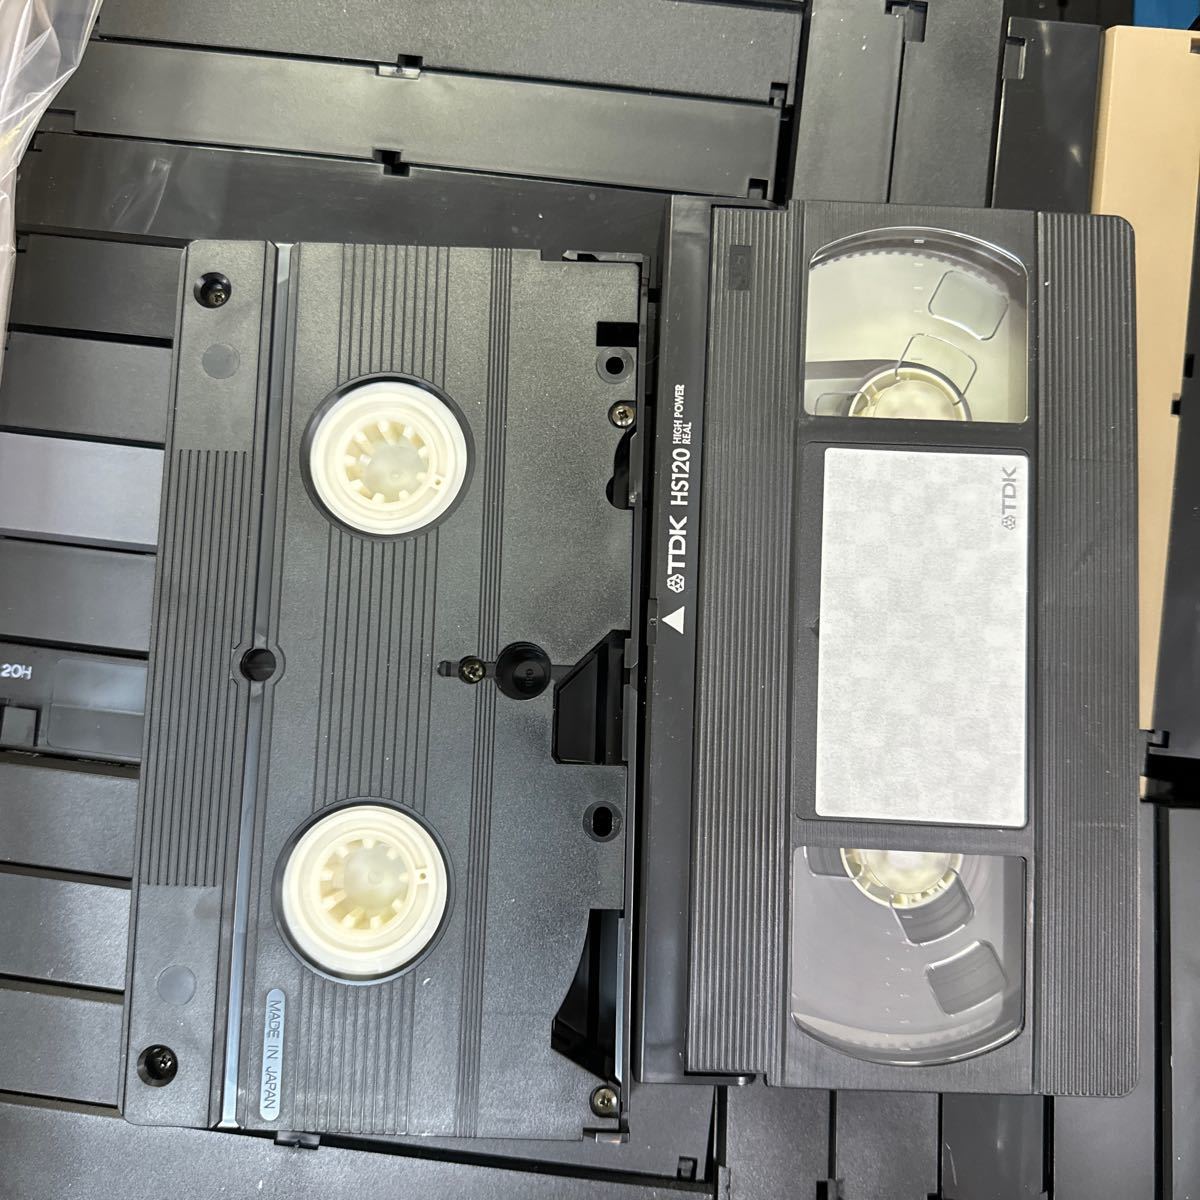 ◆⑪使用済み VHS ビデオテープ 大量まとめ売り 約100本以上 中古 録画済み ケースなし 本体のみ ダビング 上書き 再生未確認 145-19_画像4